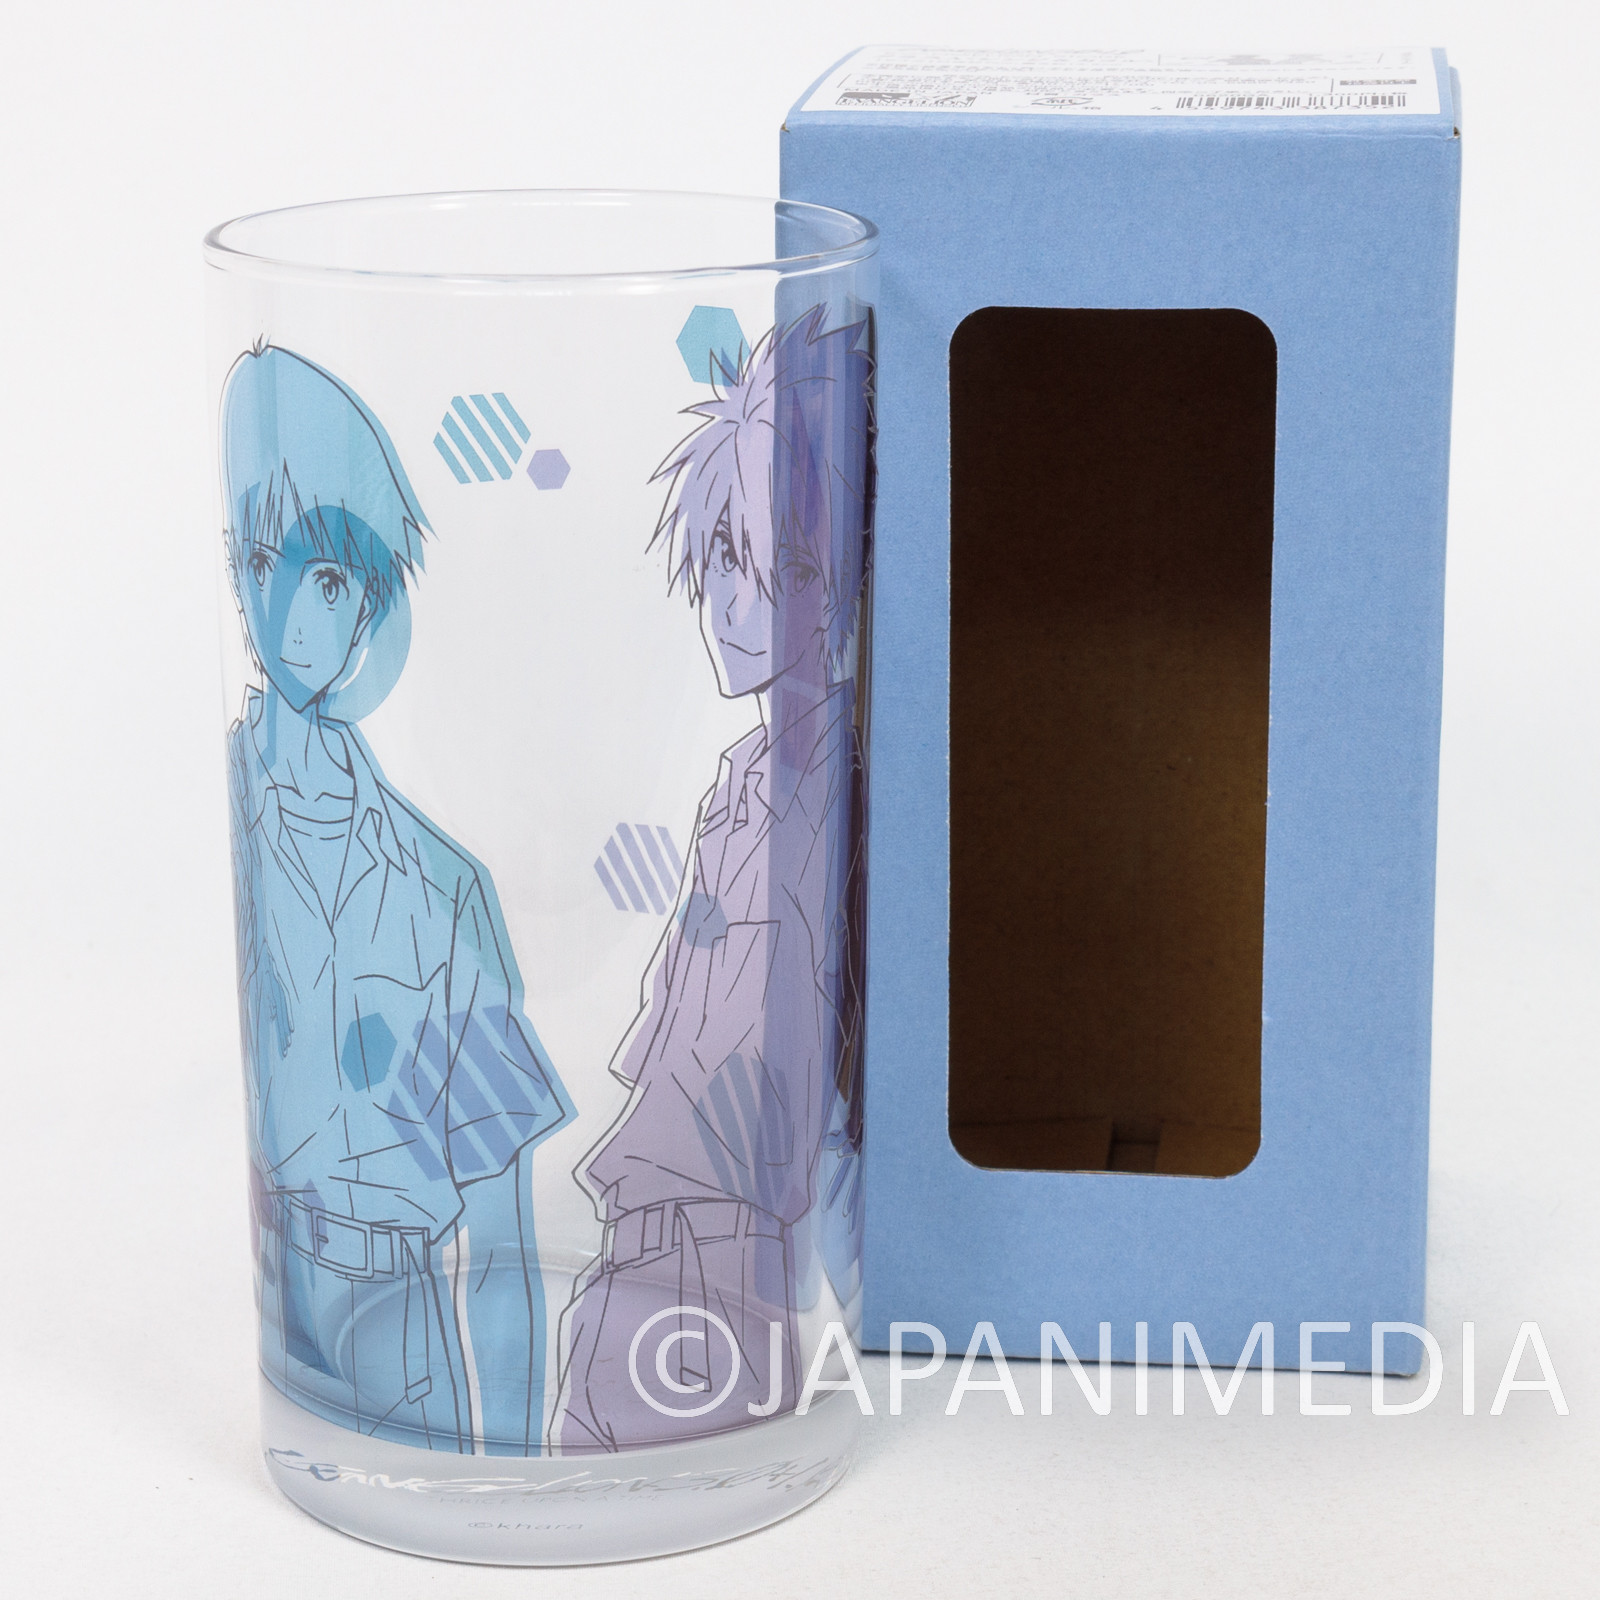 Shin Evangelion Glass Shinji Ikari Kaworu Nagisa JAPAN ANIME